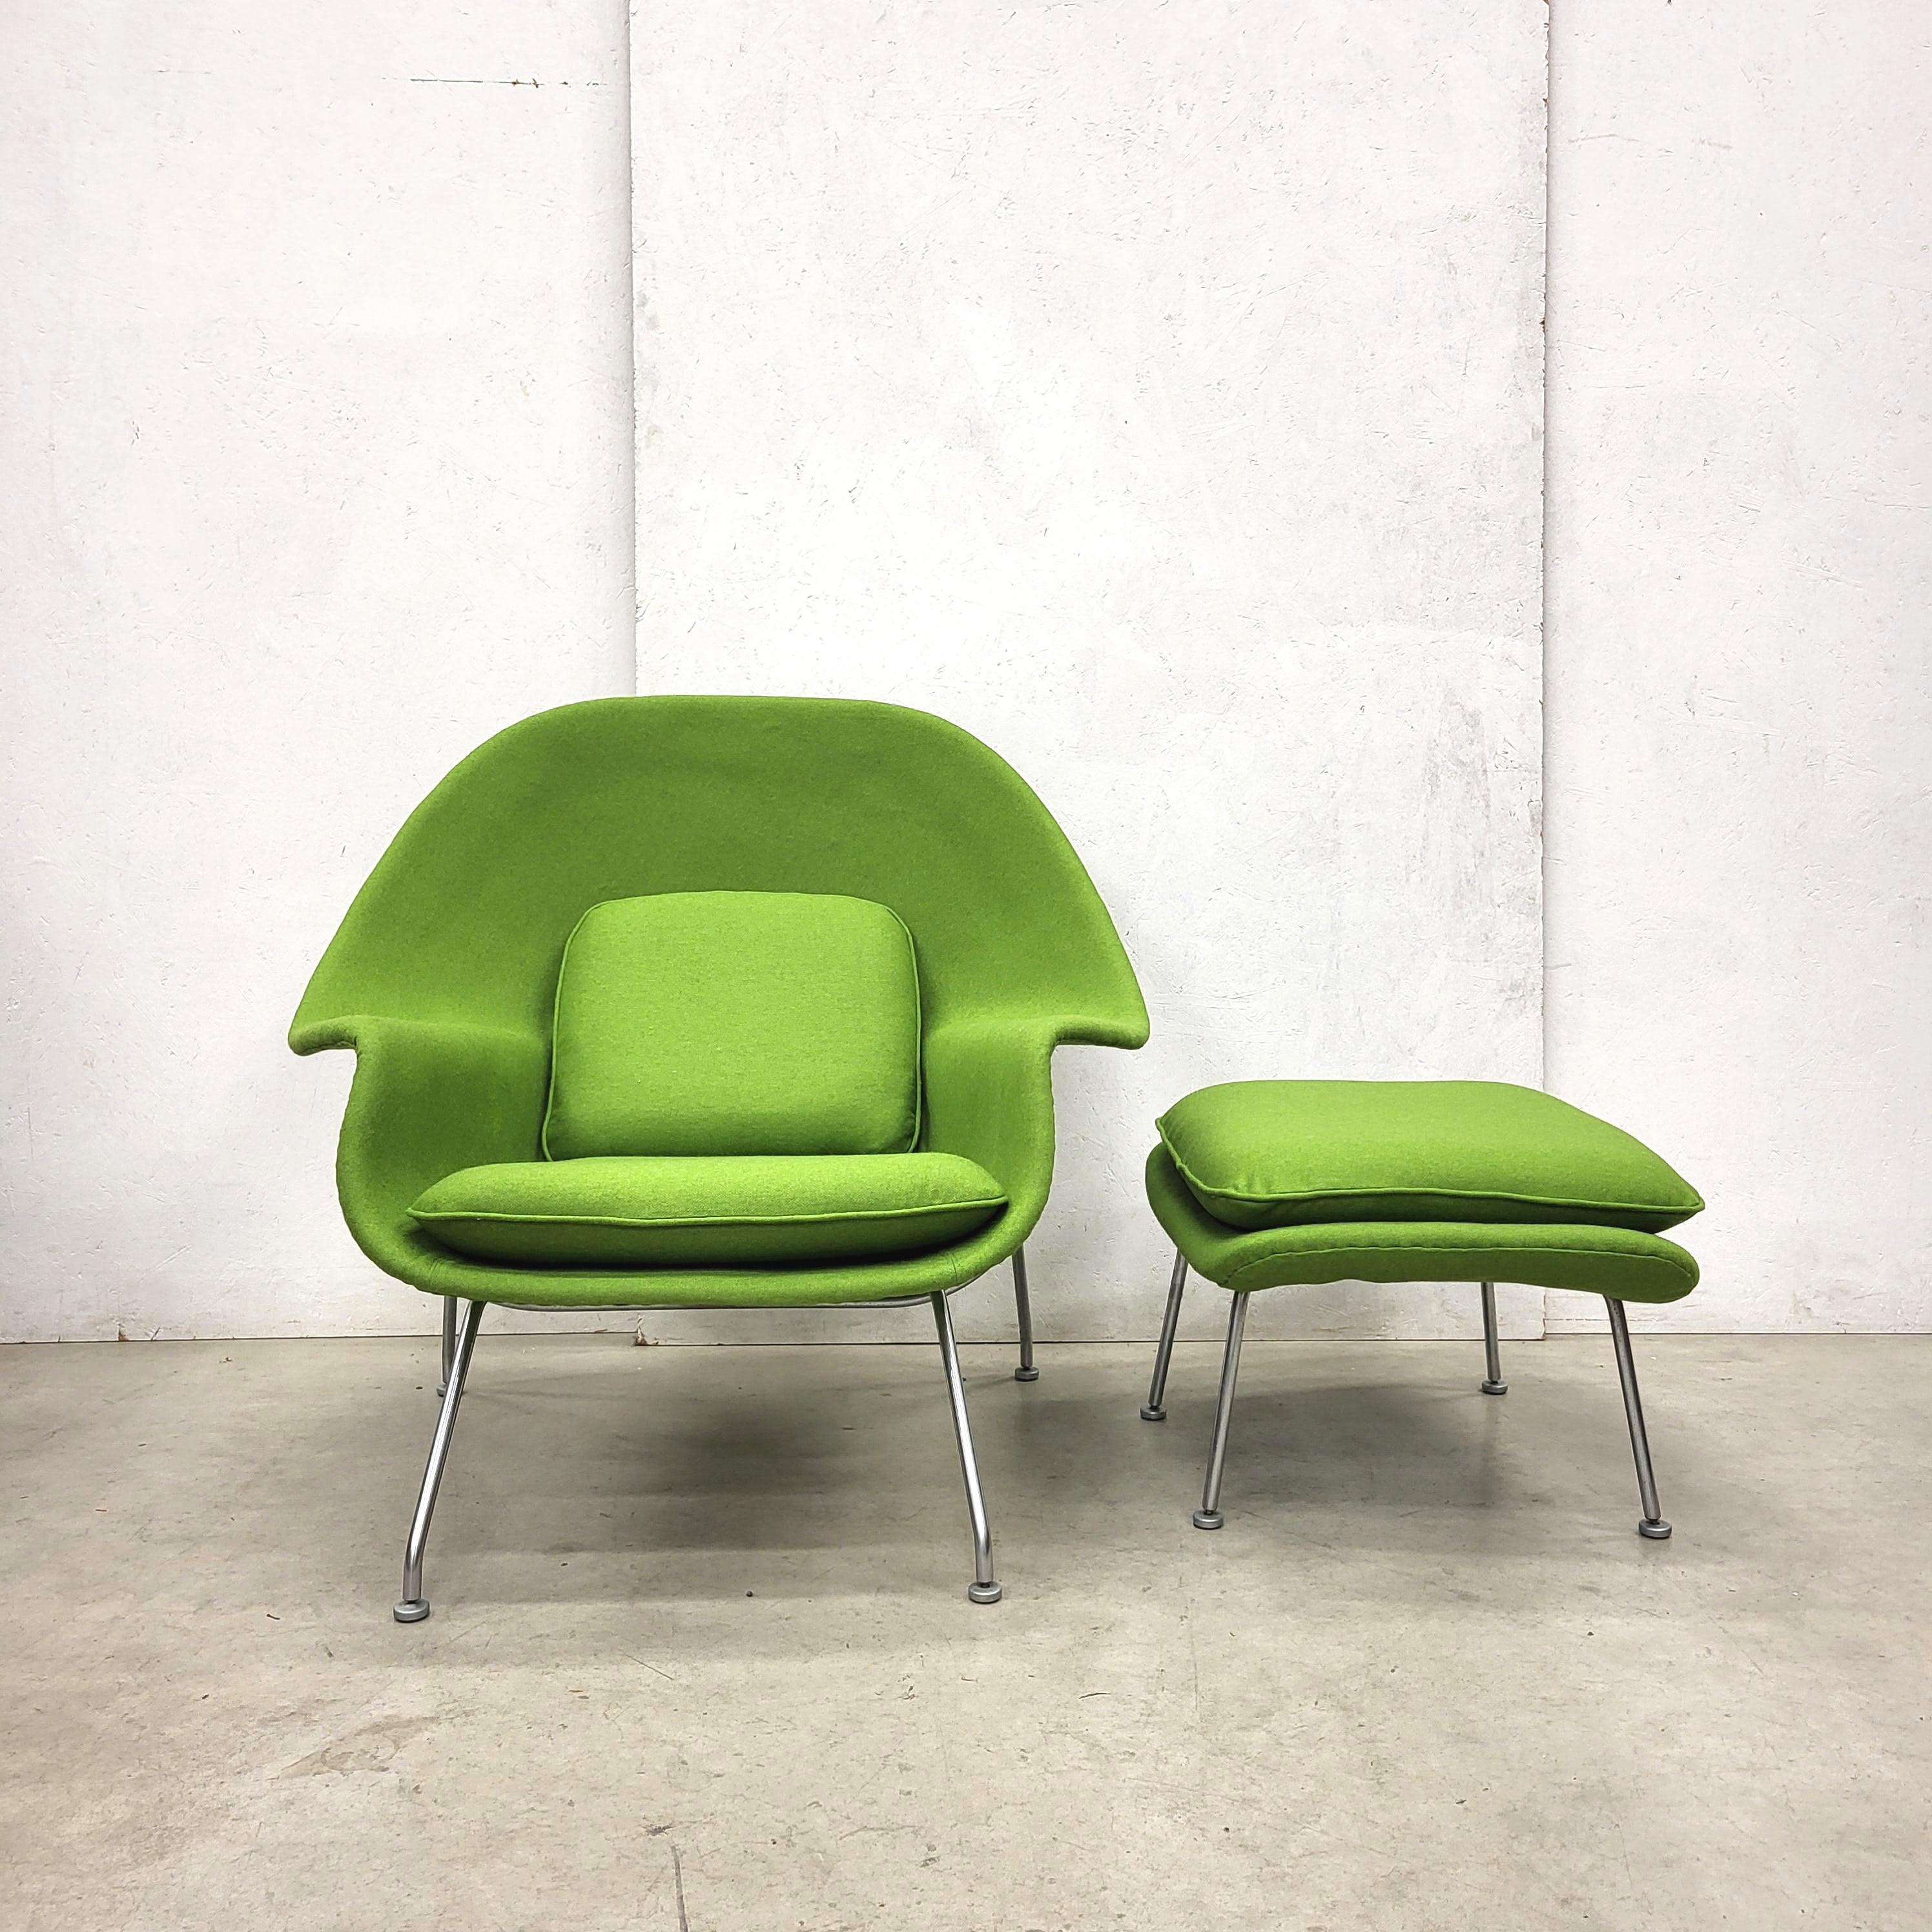 Early Woodwood Green Womb Stuhl und Ottomane von Eero Saarinen für Knoll. 

Der bahnbrechende Womb Chair wurde 1948 von Eero Saarinen auf Wunsch von Florence Knoll entworfen, die sich 